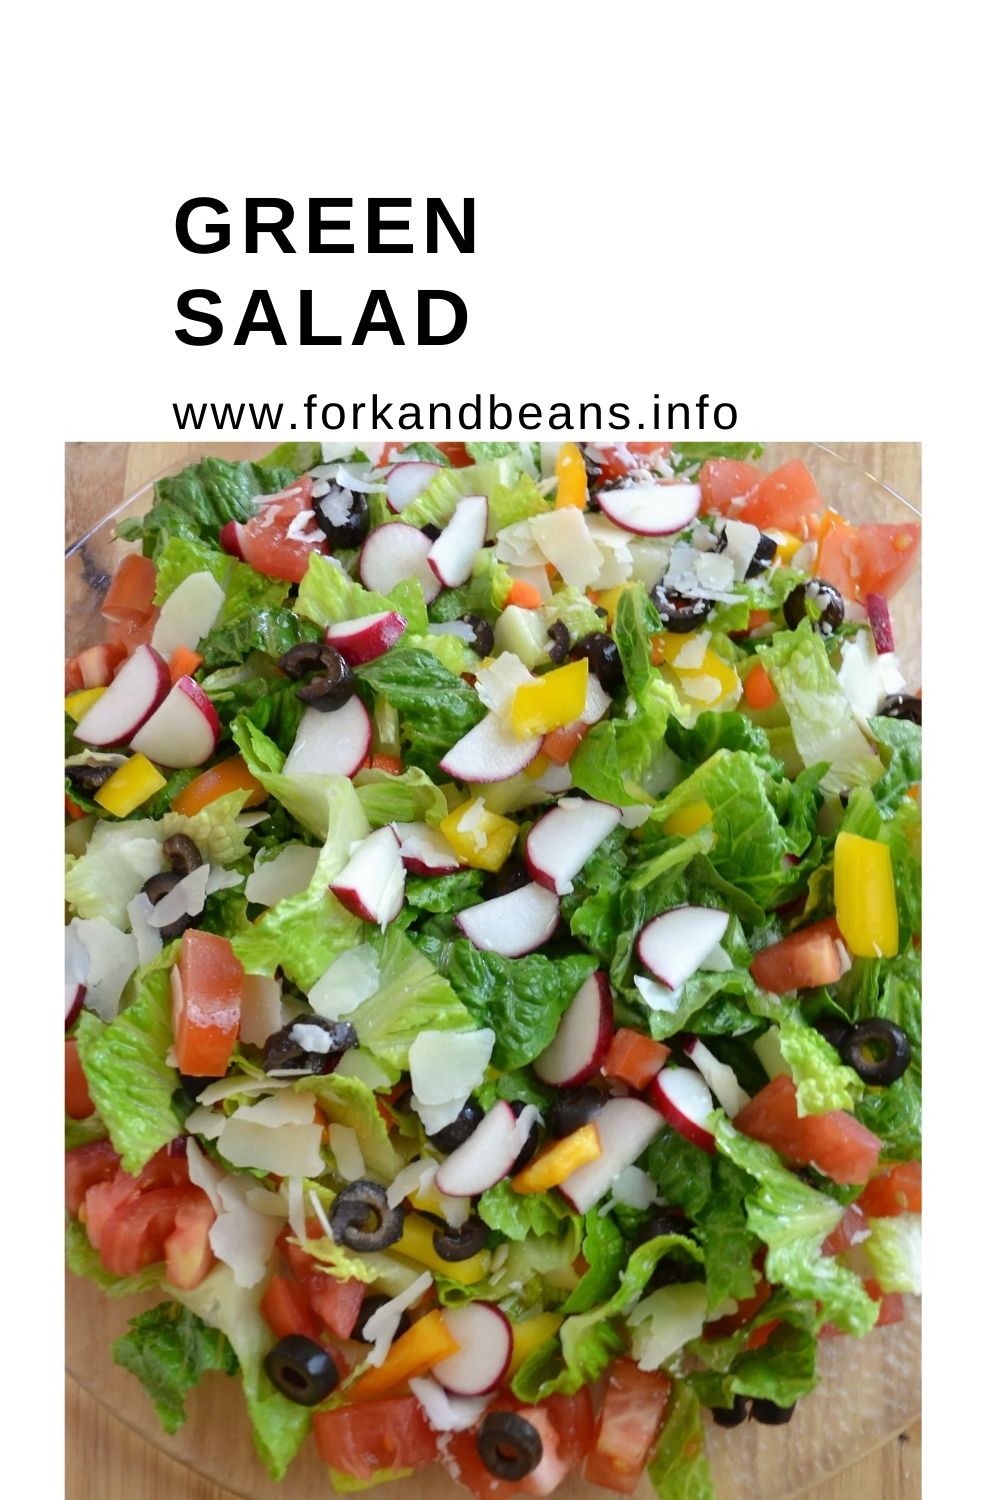 Green Salad – Crisp